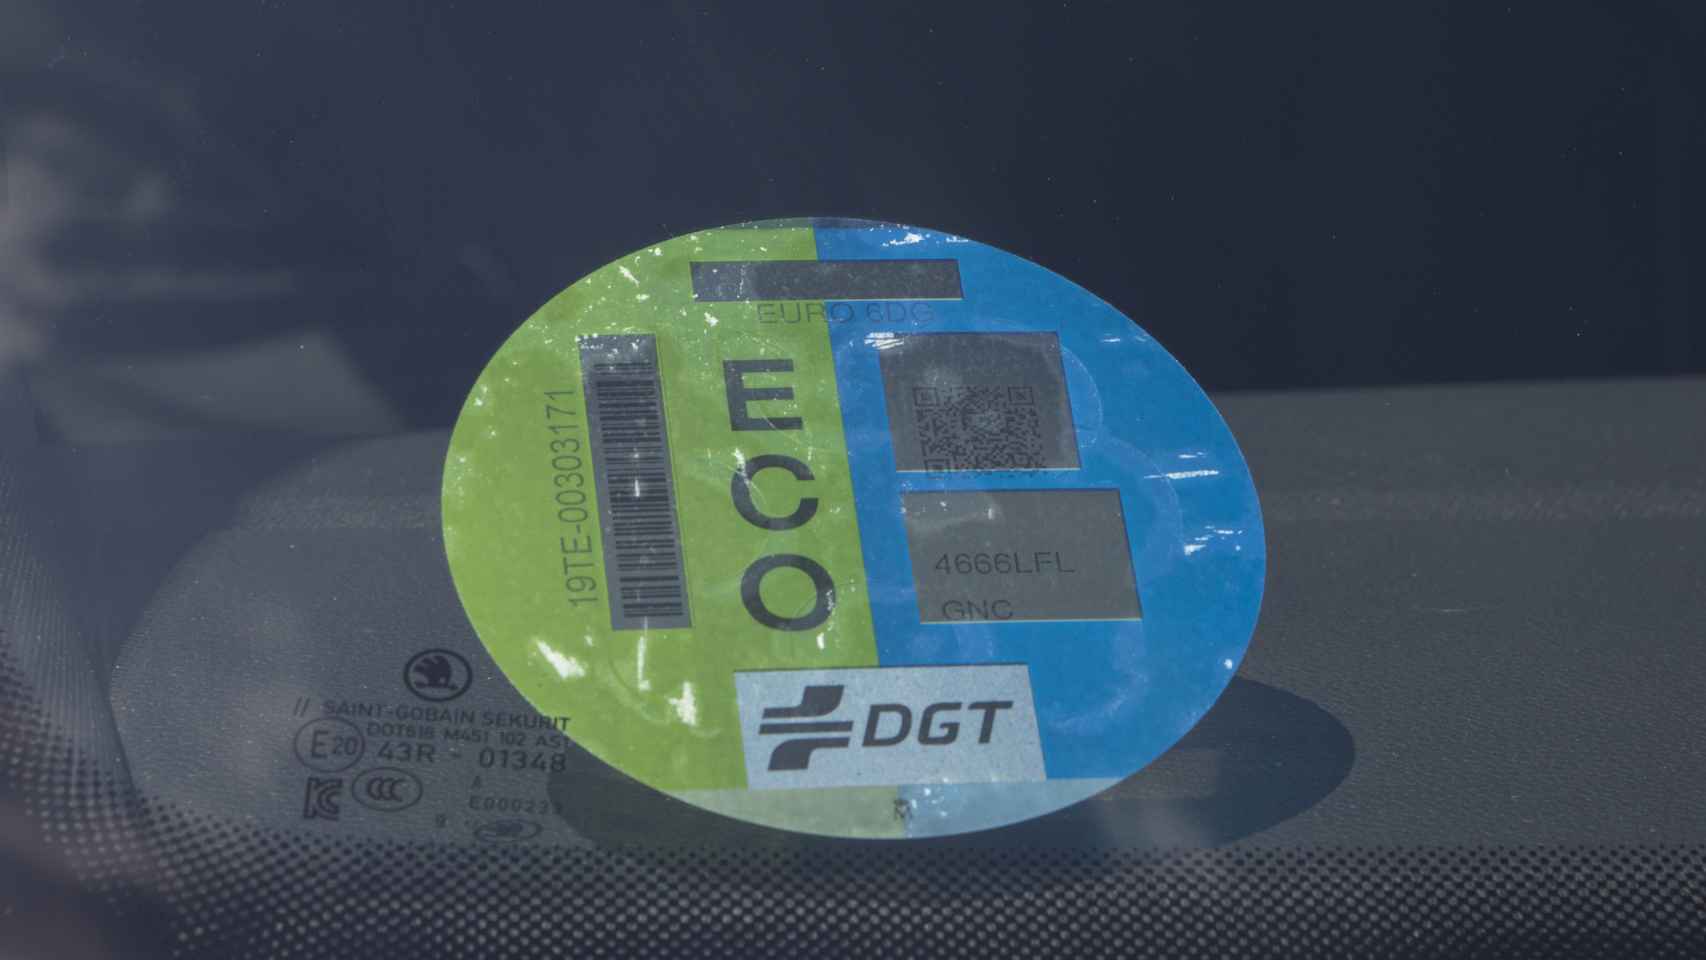 Etiqueta ECO de la DGT.